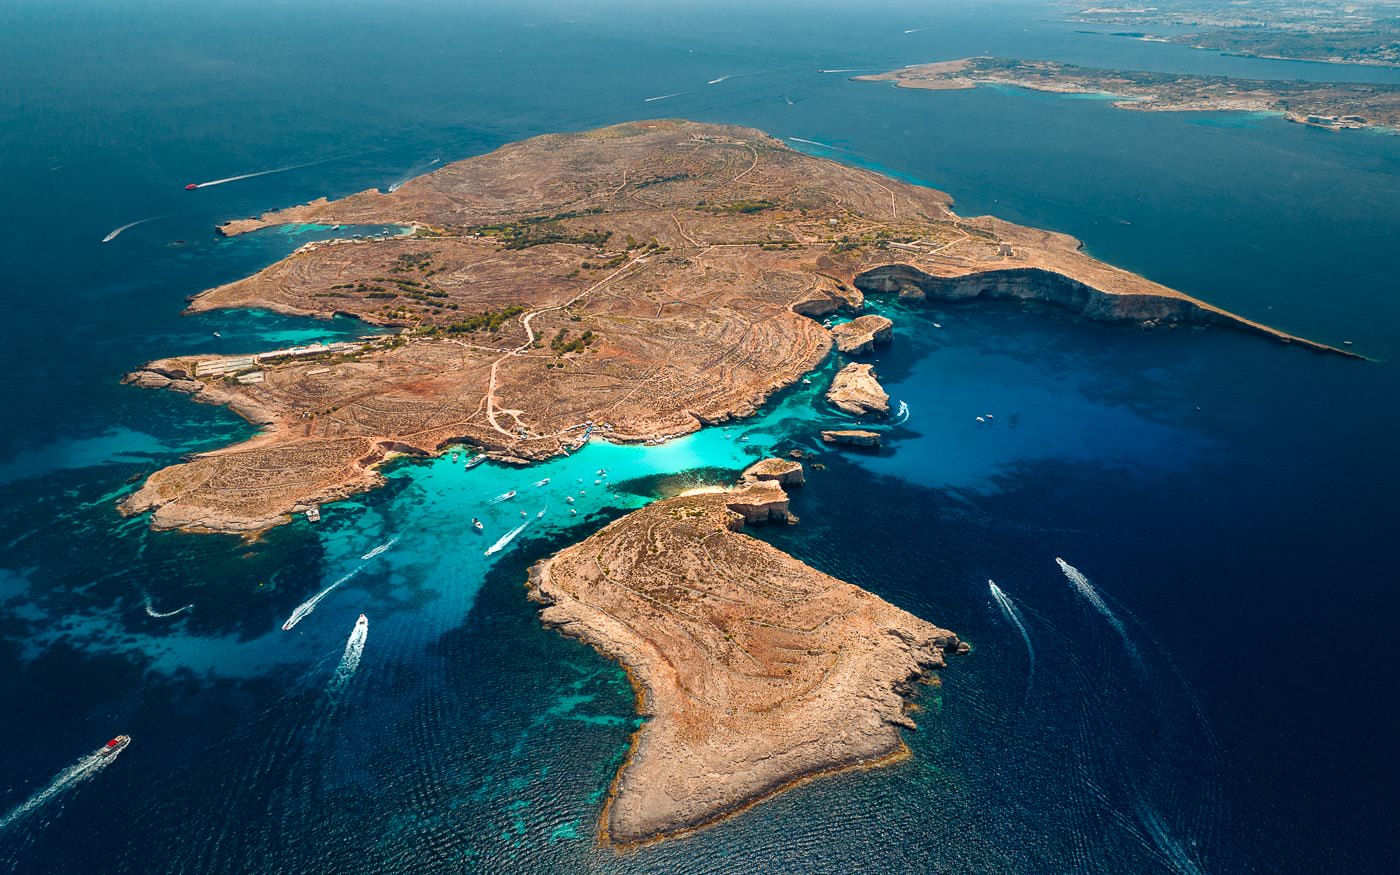 Comino Island in Malta